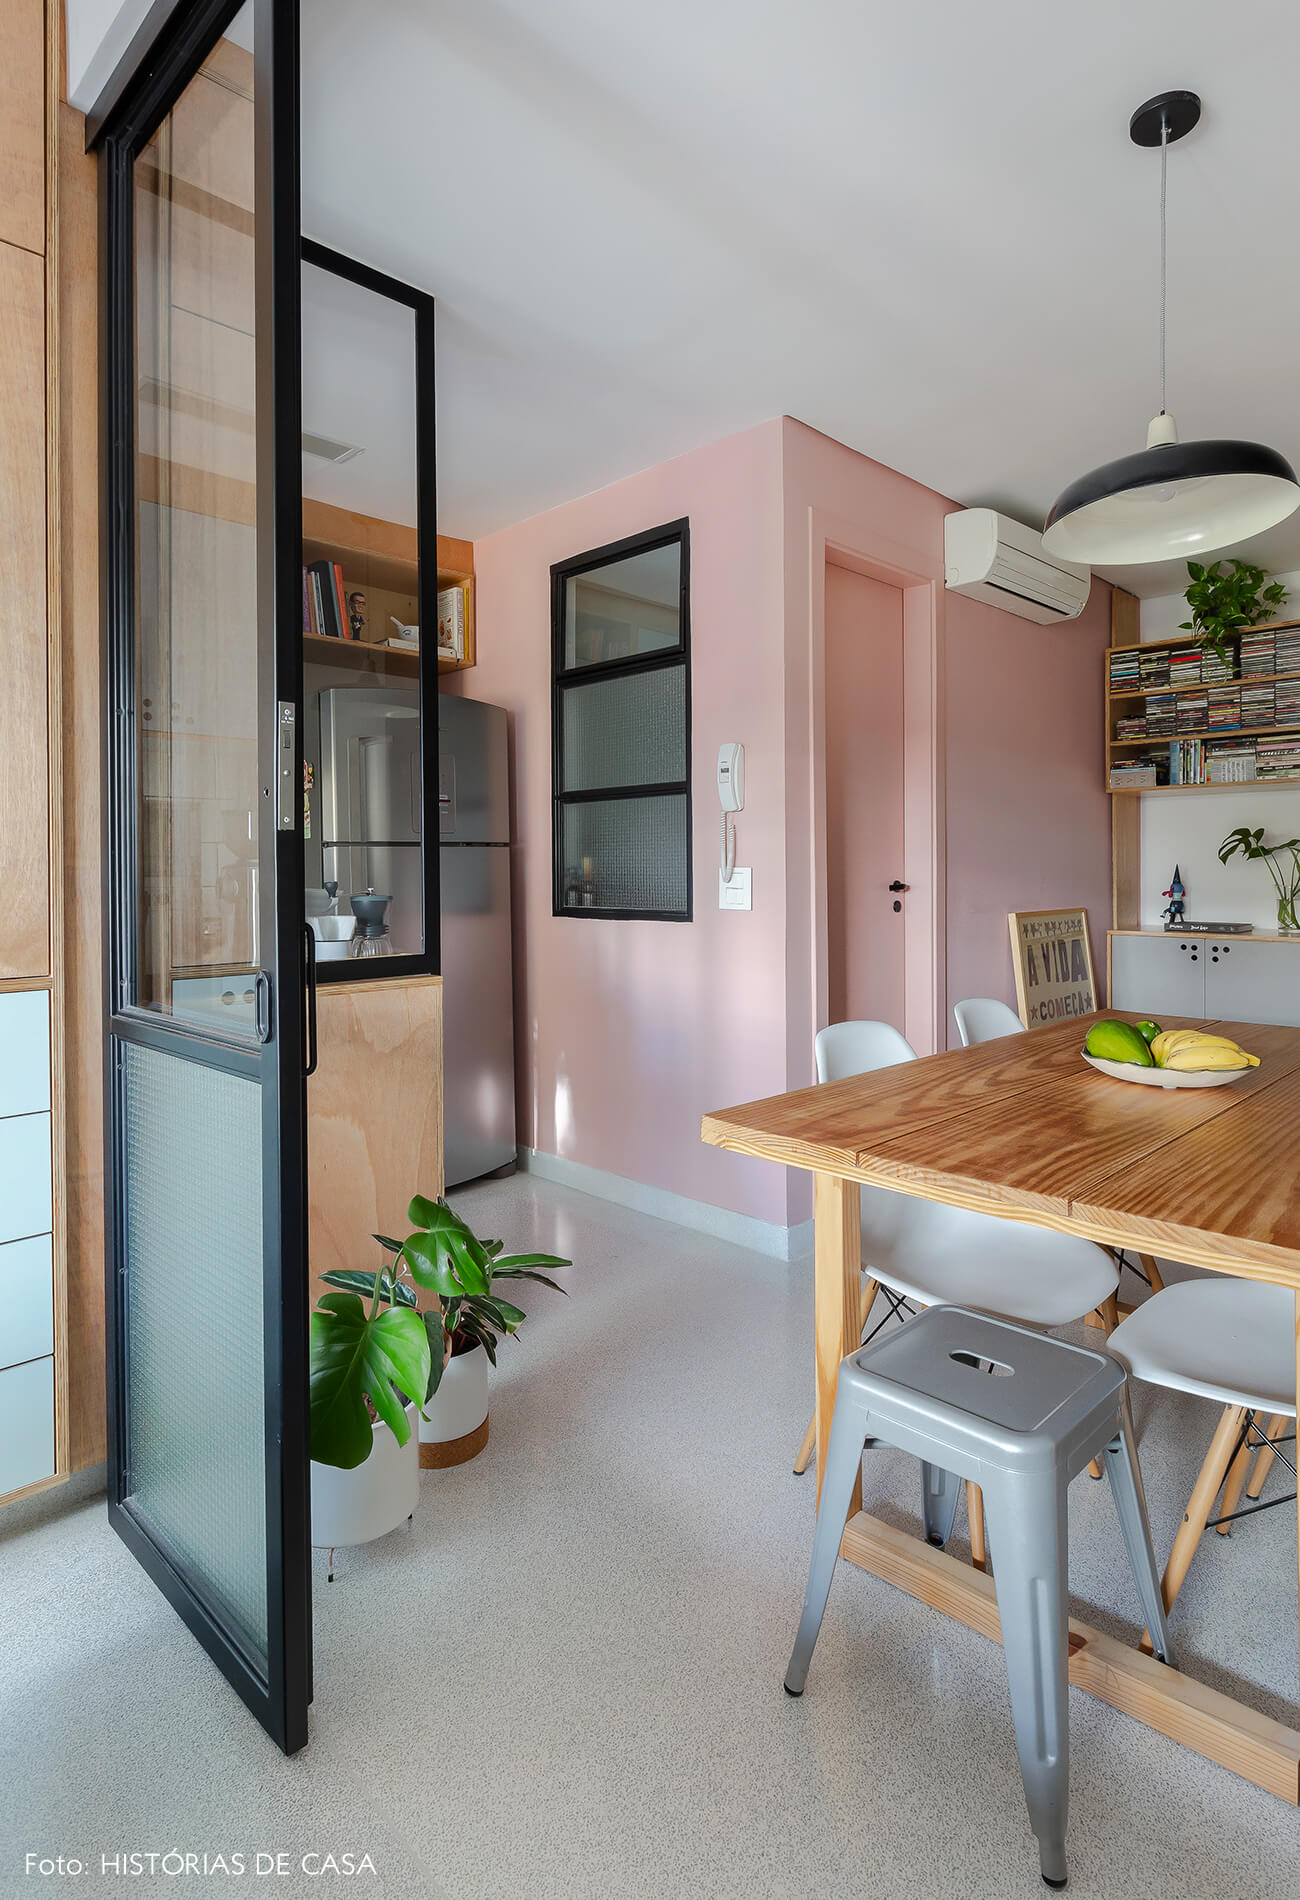 Apartamento pequeno com parede colorida, piso claro e divisórias de vidro